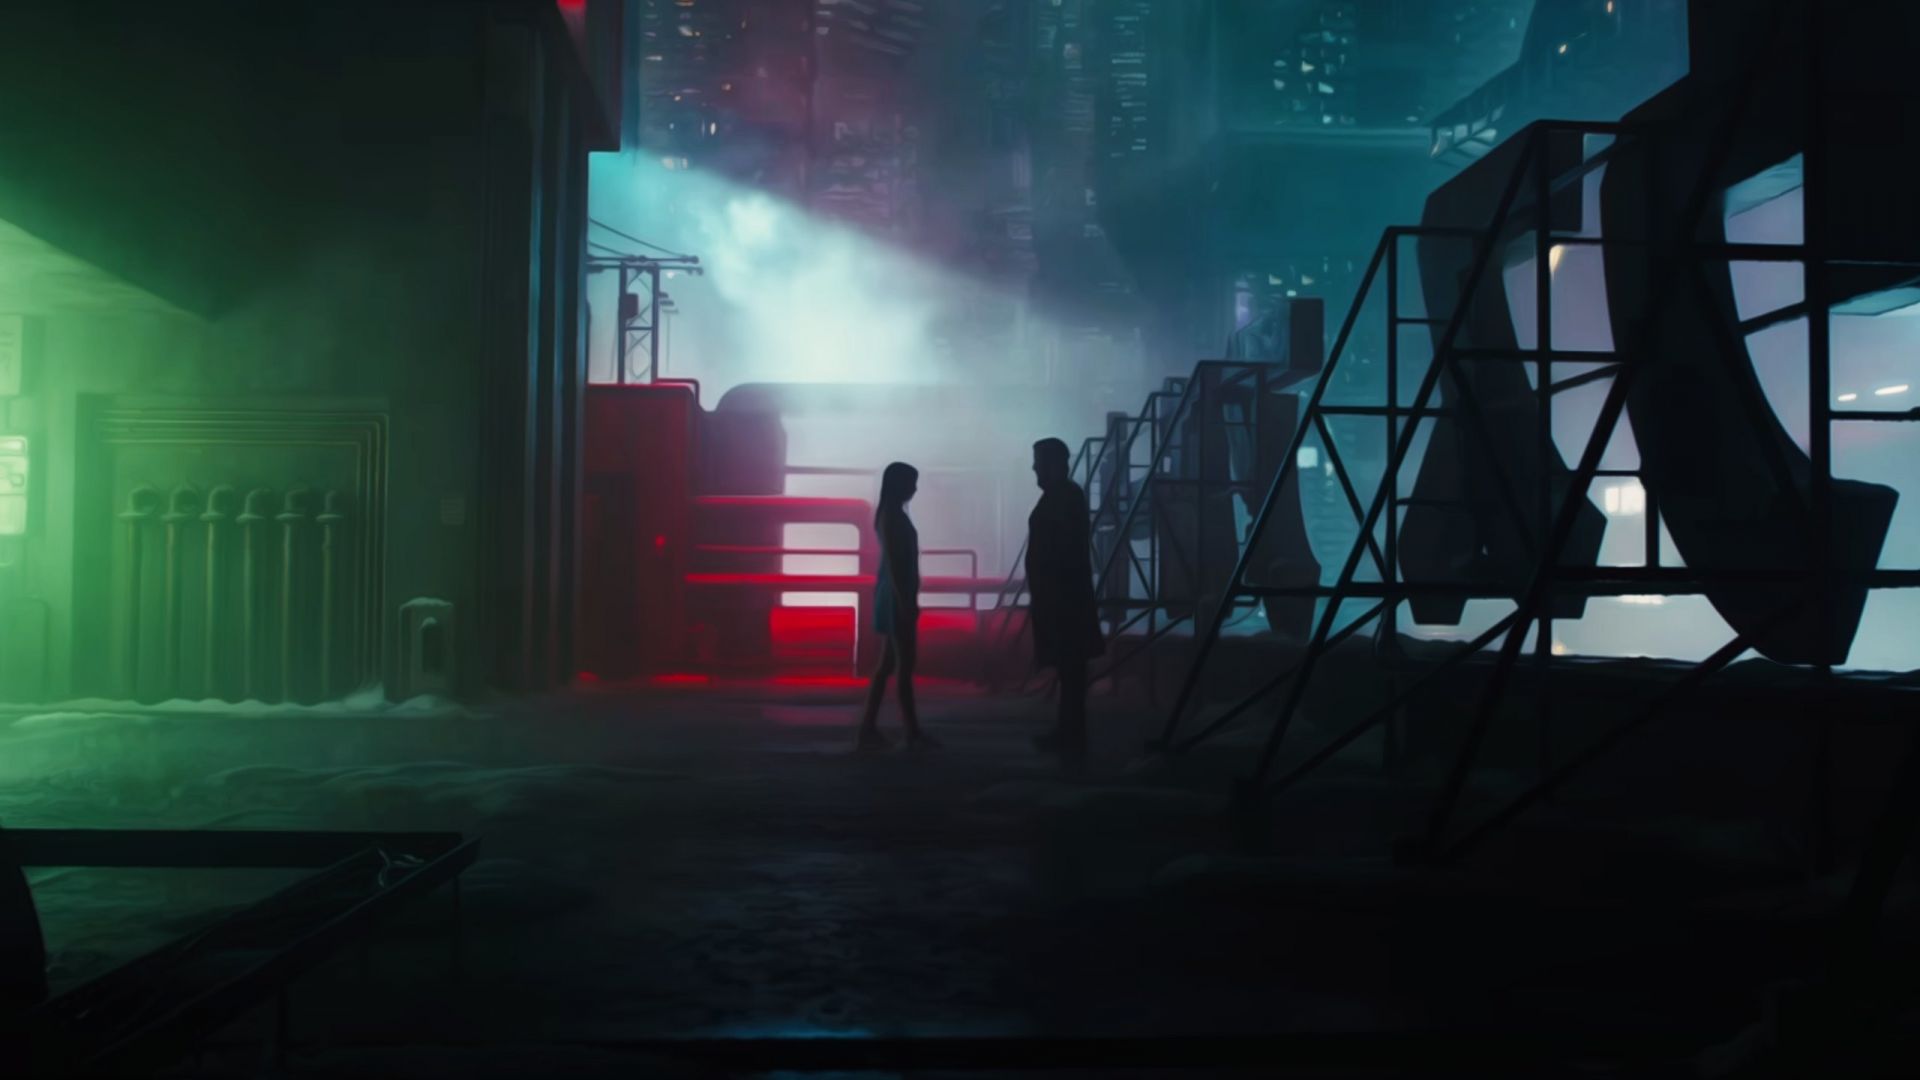 Blade Runner 2049 Wallpaper 4k by thephoenixprod on DeviantArt